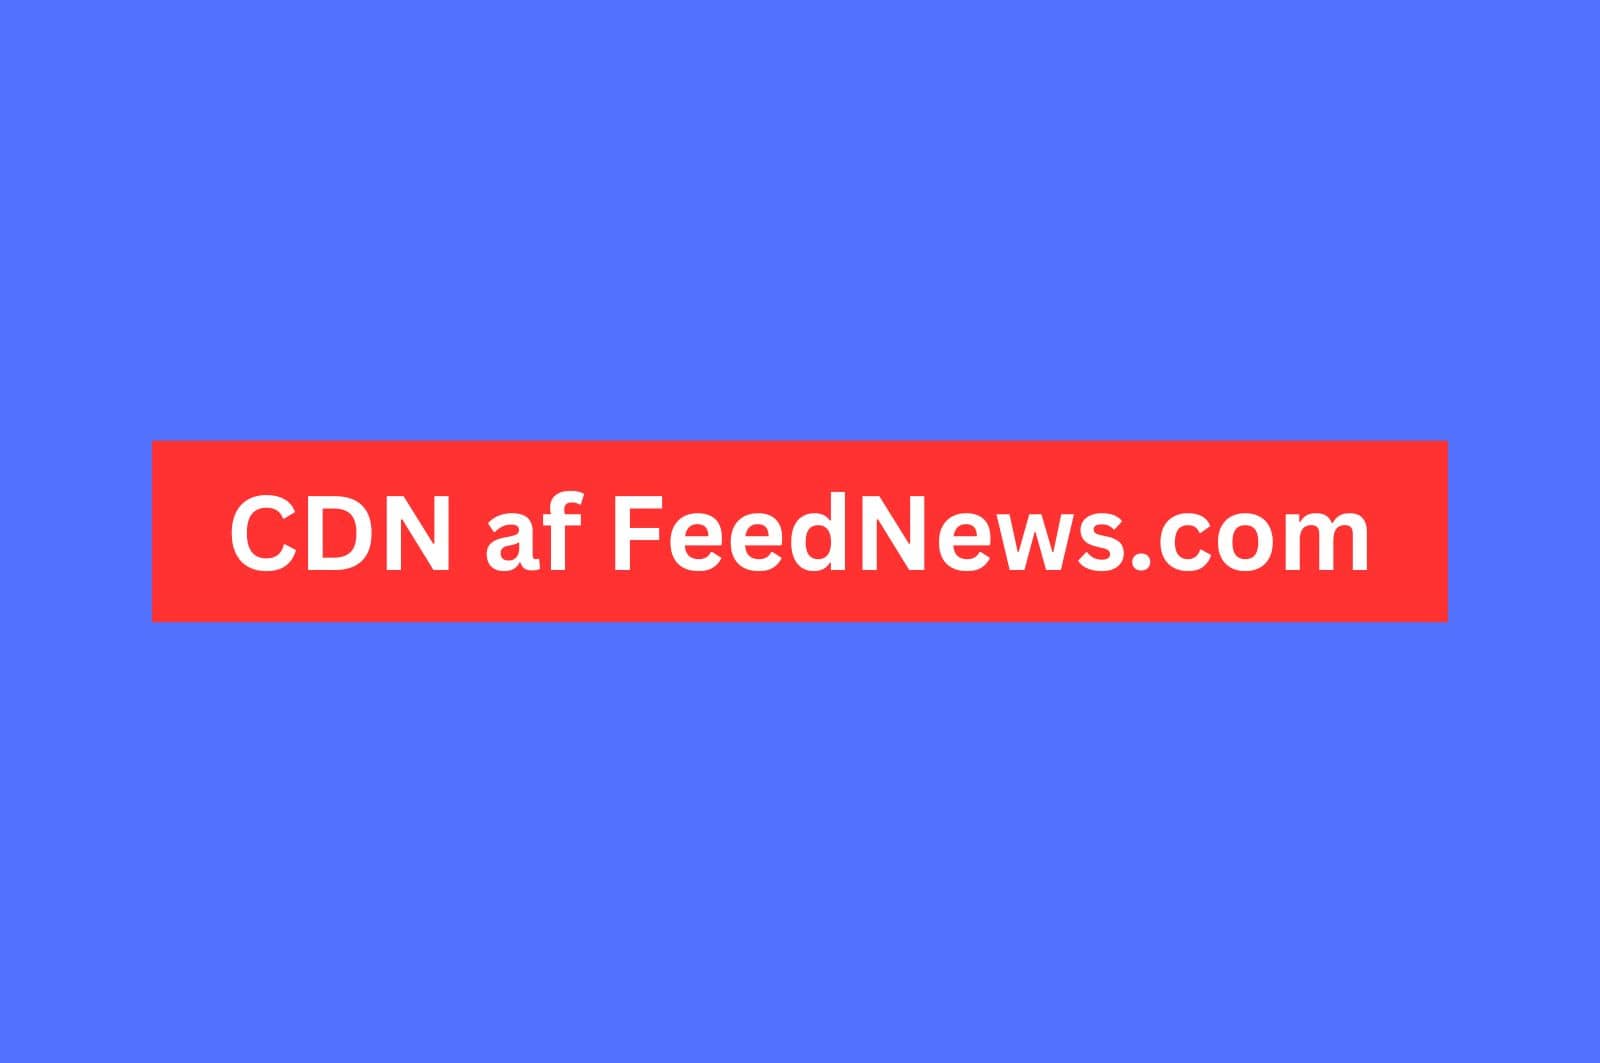 CDN af FeedNews.com